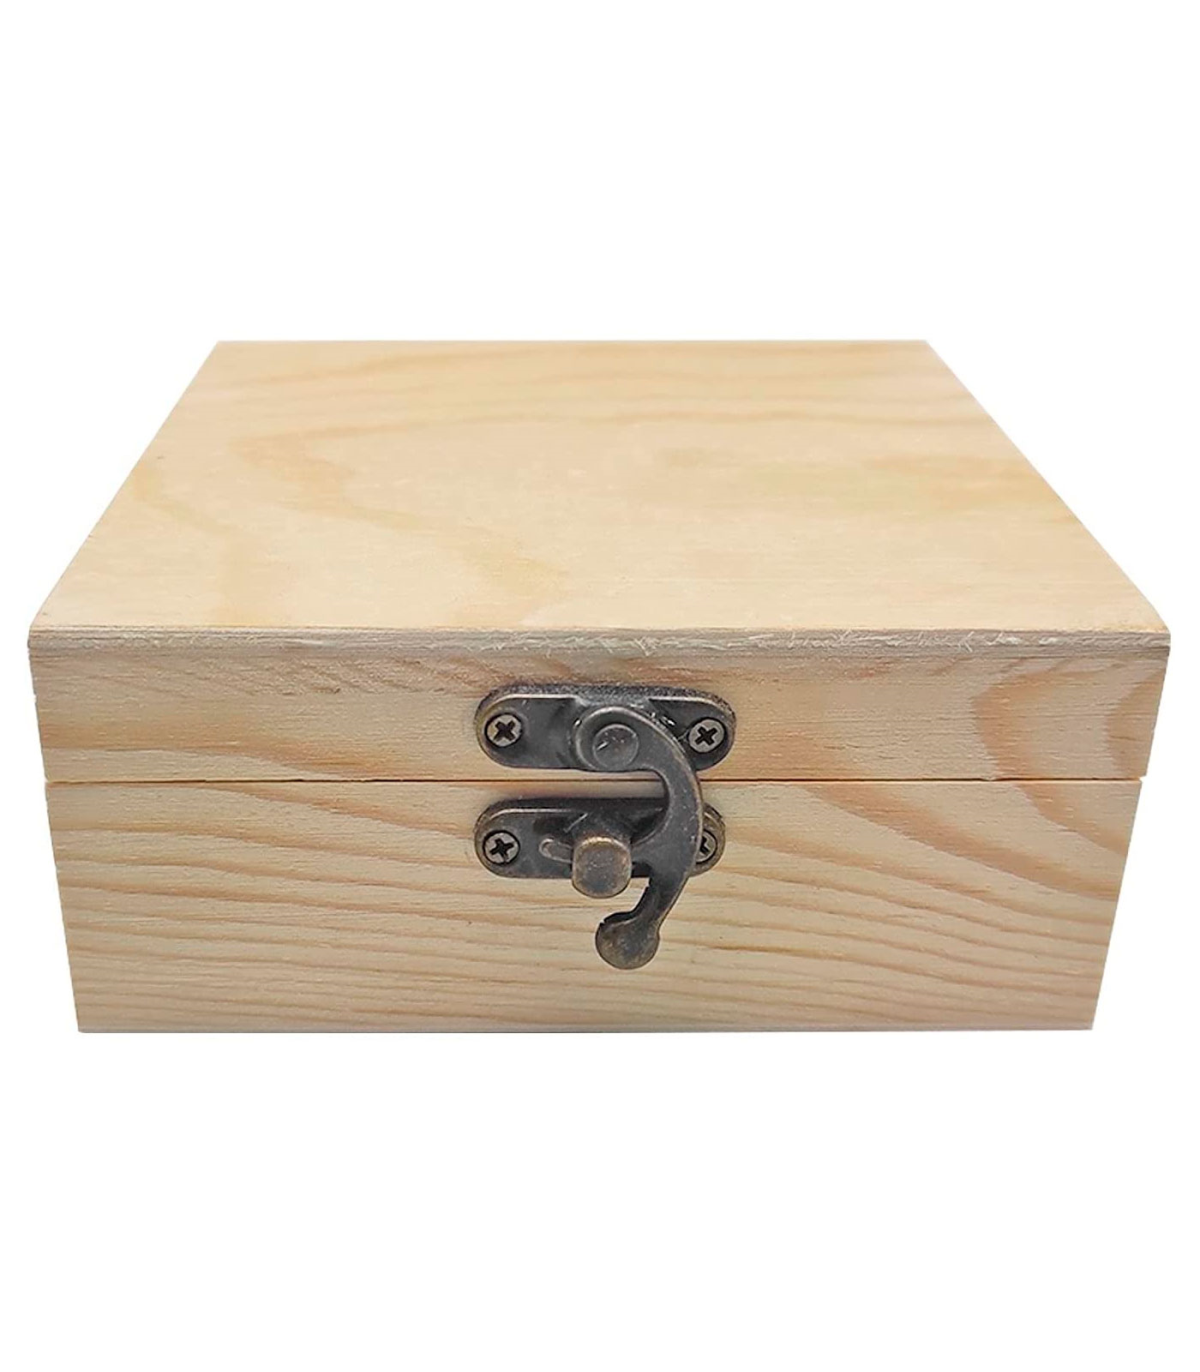 Caja de madera cuadrada con cierre metálico 12 x 12 x 5,3 cm, cajita  decorativa de madera natural sin tratar para manualidades